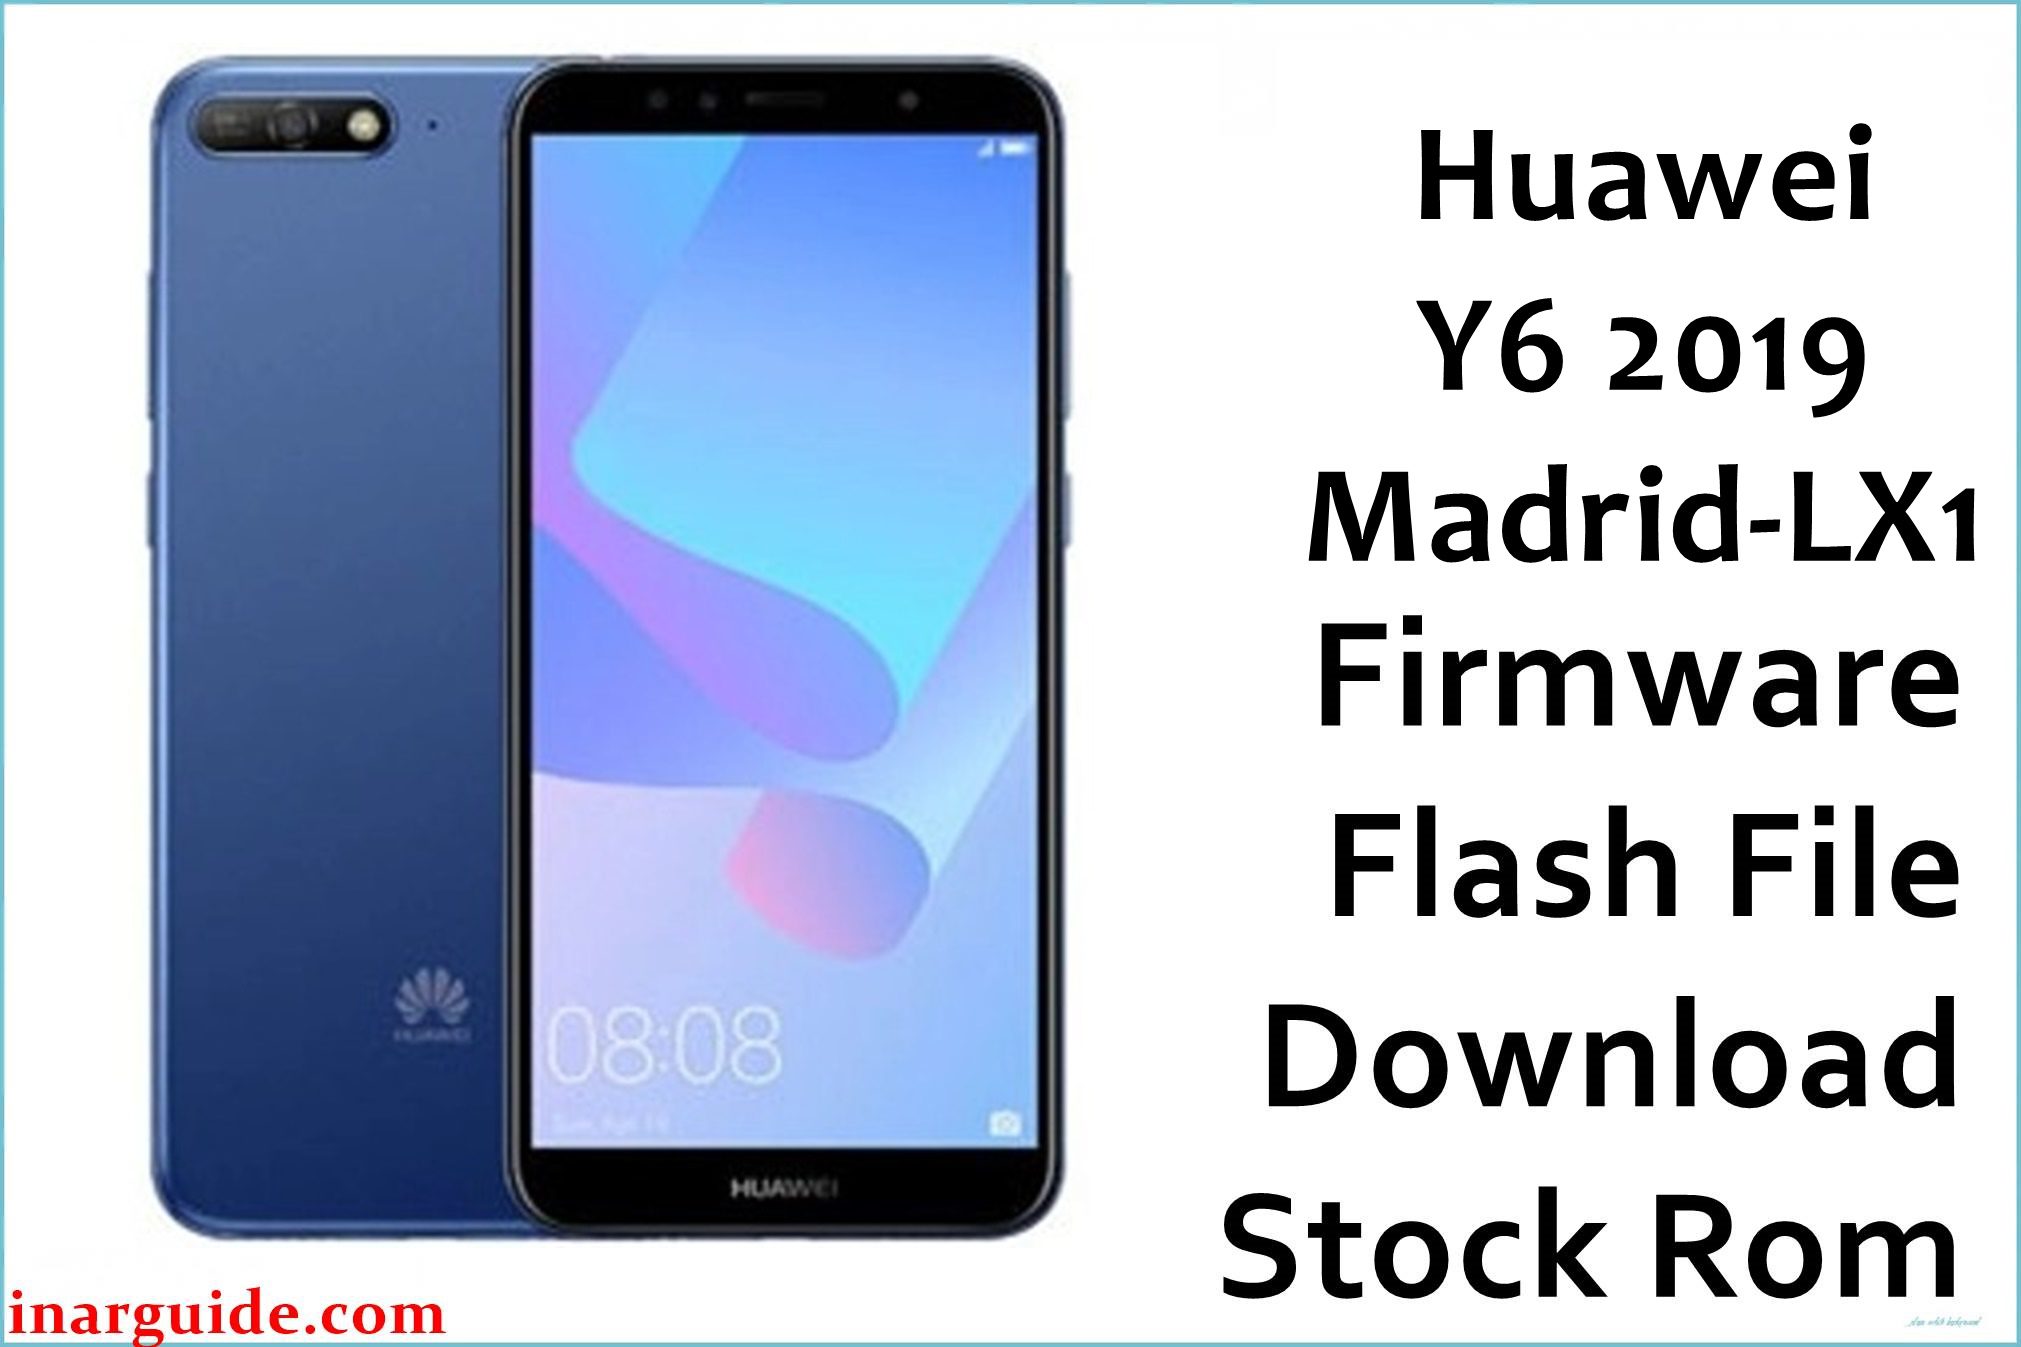 Huawei Y6 2019 Madrid LX1